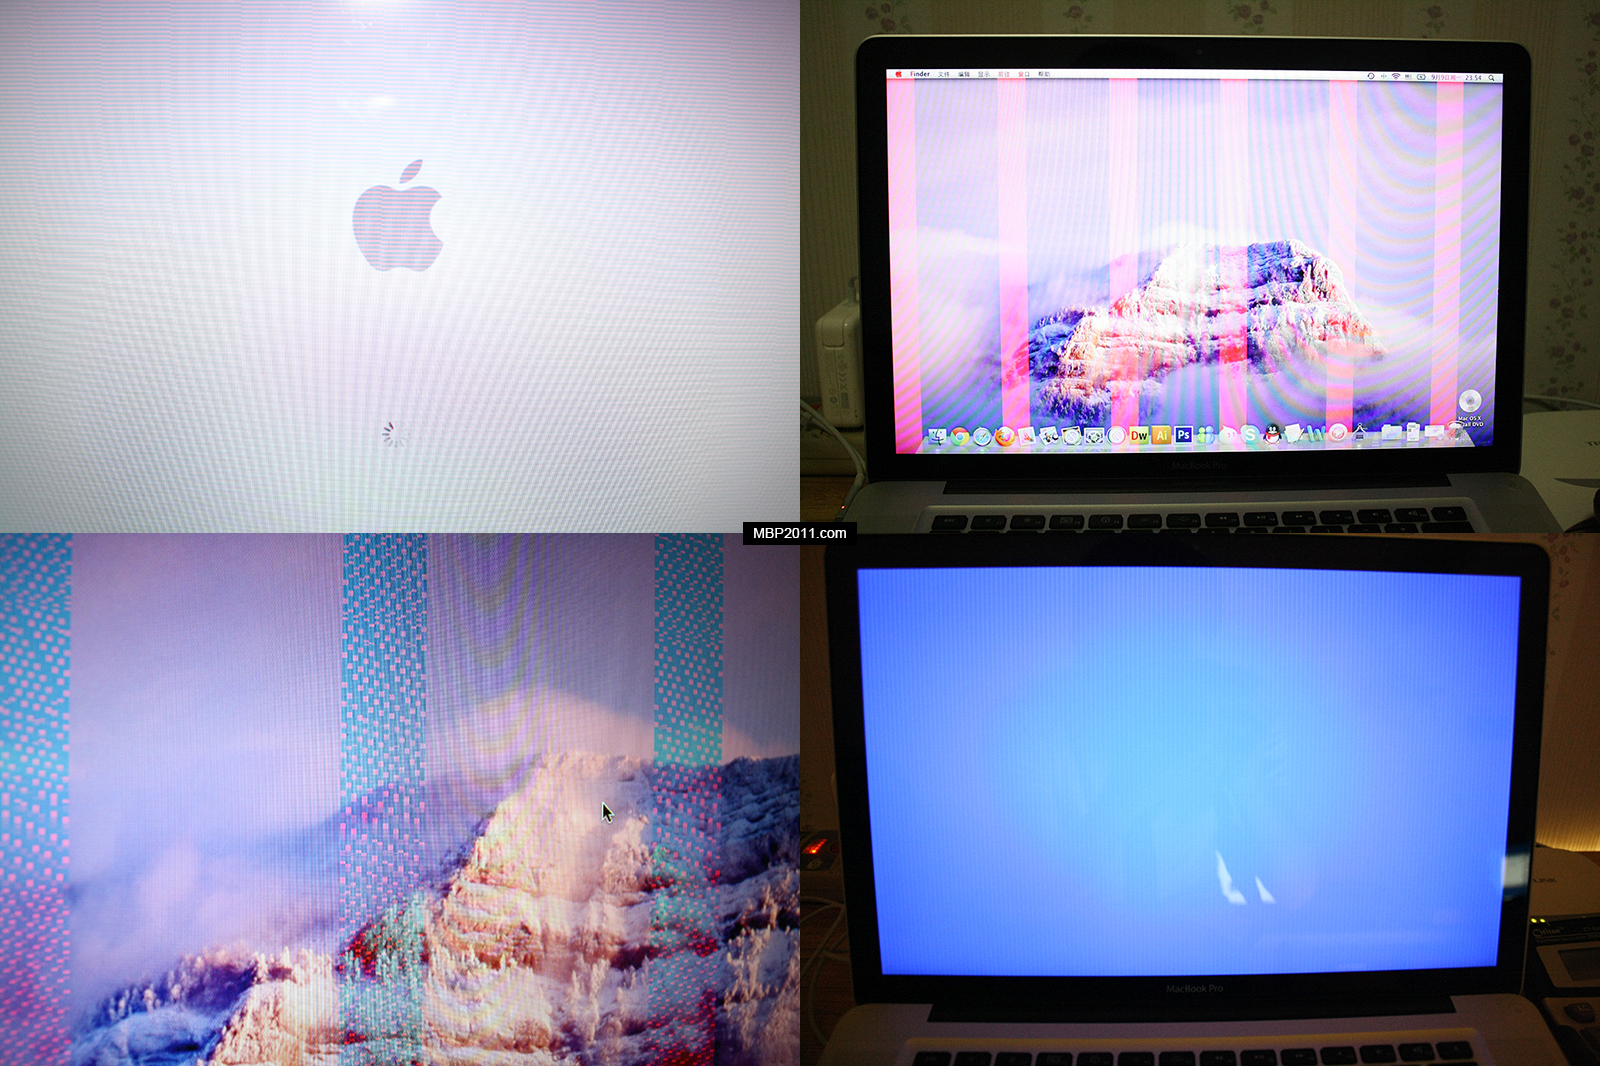 Donos de MacBooks Pro lançados em 2011 reclamam de placas de vídeo defeituosas